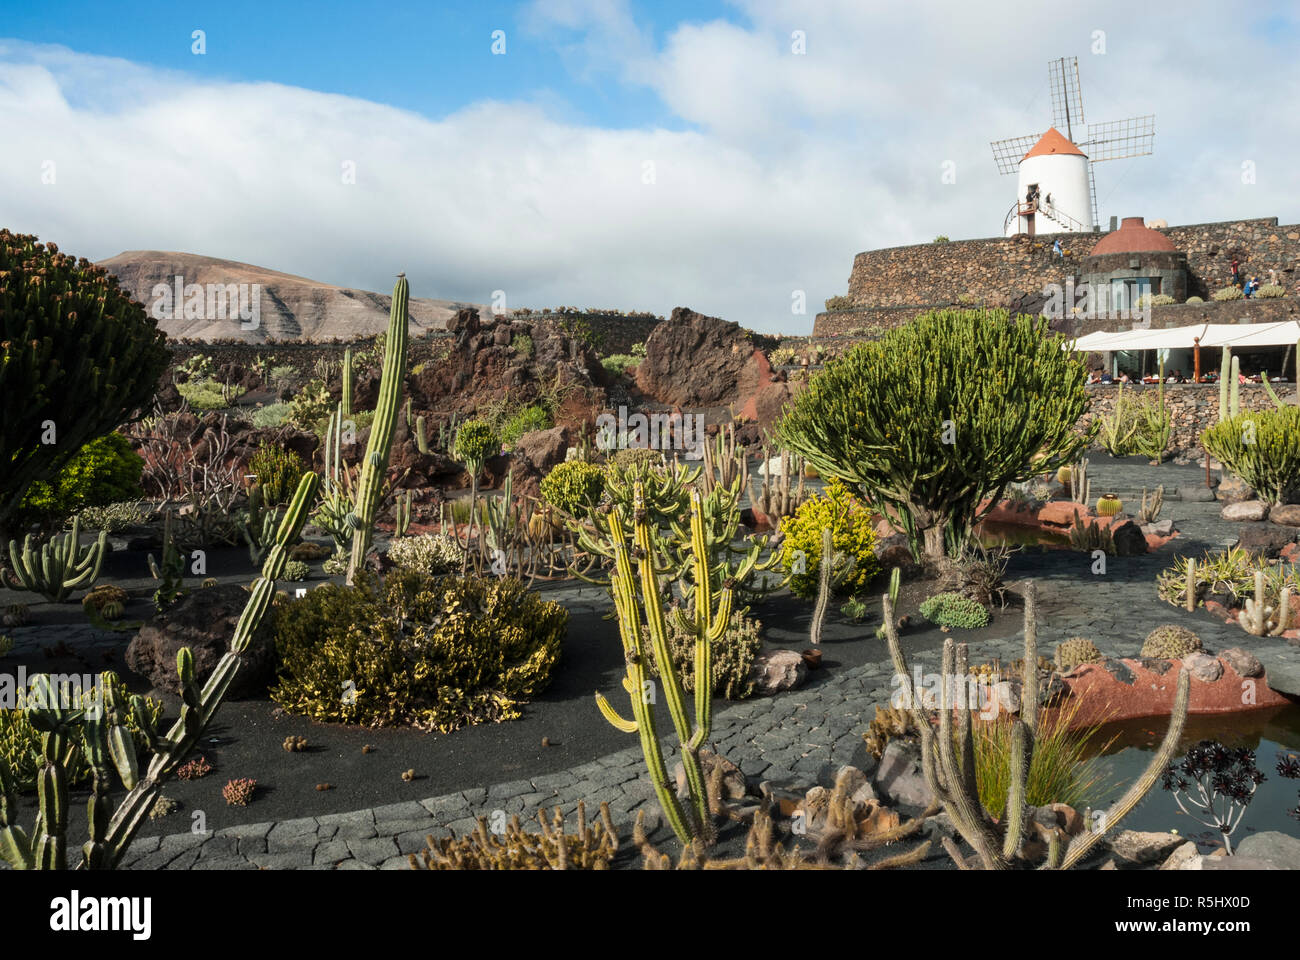 Rückgewinnung von einem alten Steinbruch ist die spektakuläre Kaktus Garten bei Guatiza auf Lanzarote mit über tausend Kakteen Sorten und traditionellen Windmühle. Stockfoto